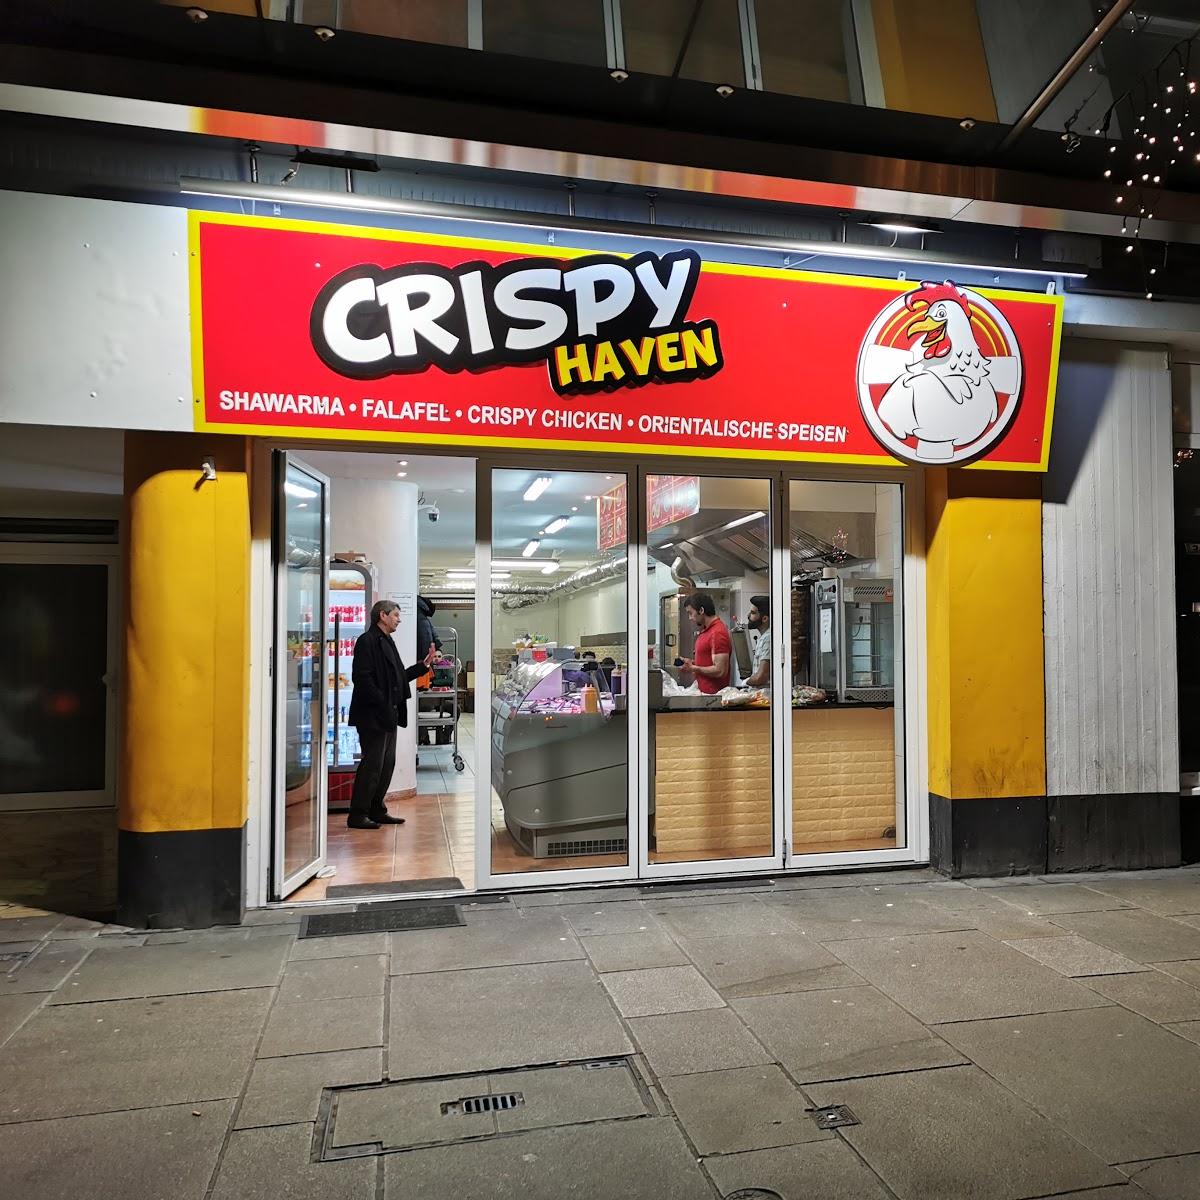 Restaurant "Crispy Haven" in Bremerhaven